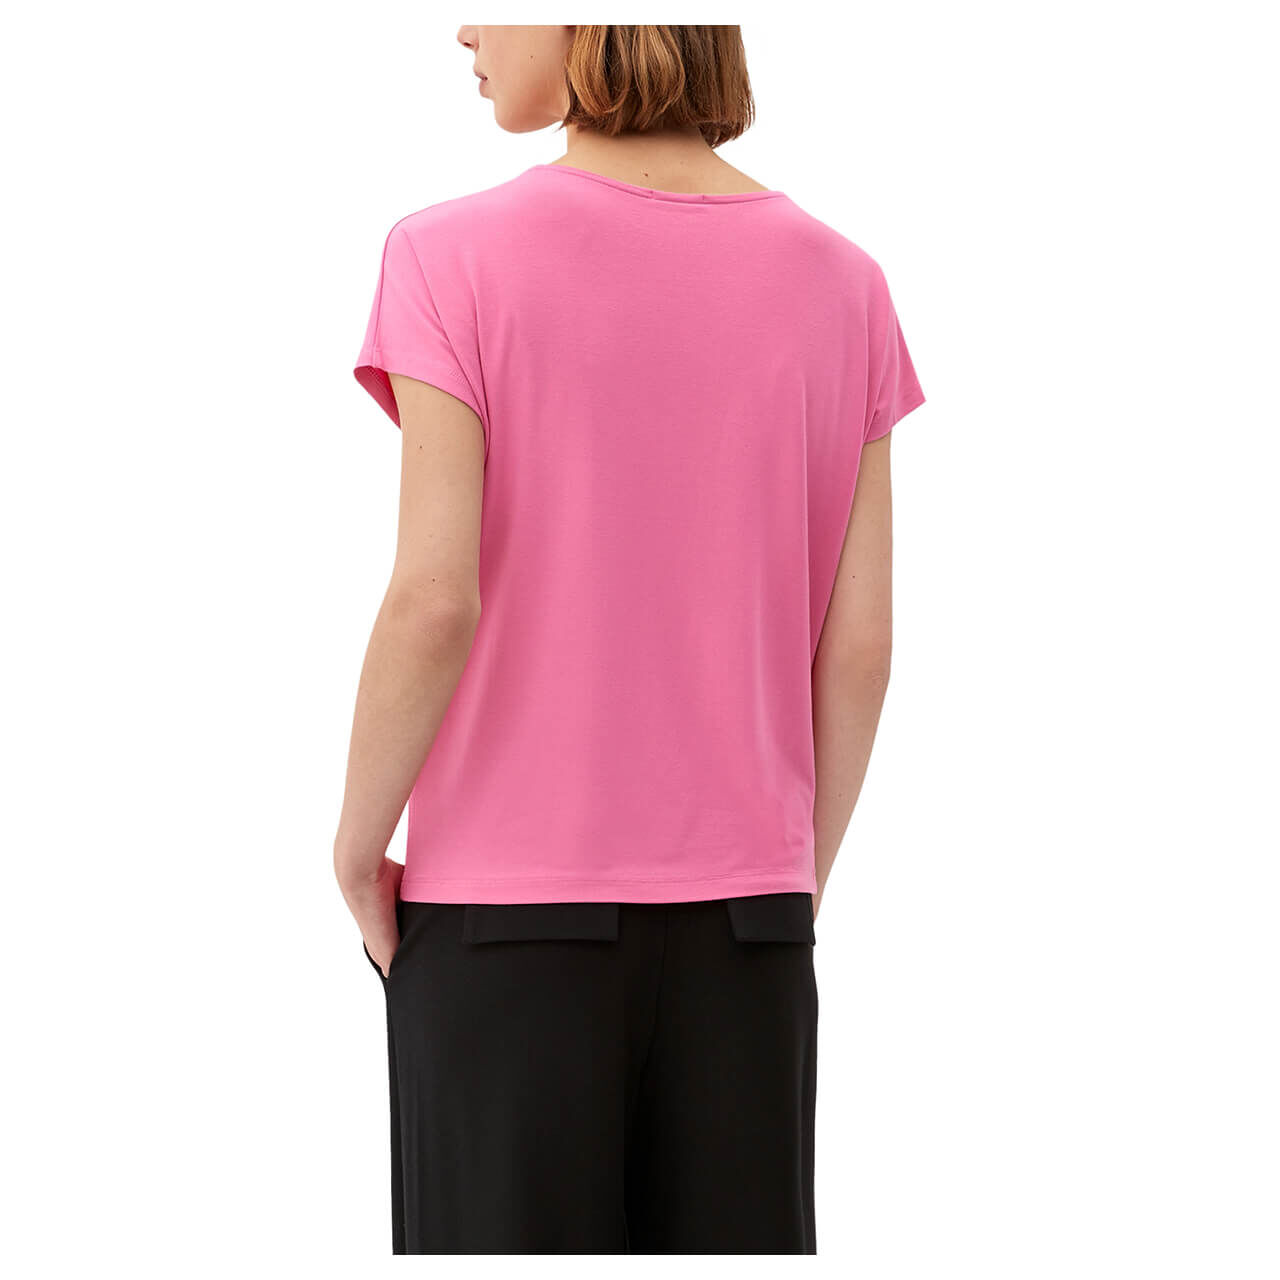 s.Oliver Damen T-Shirt lilac pink